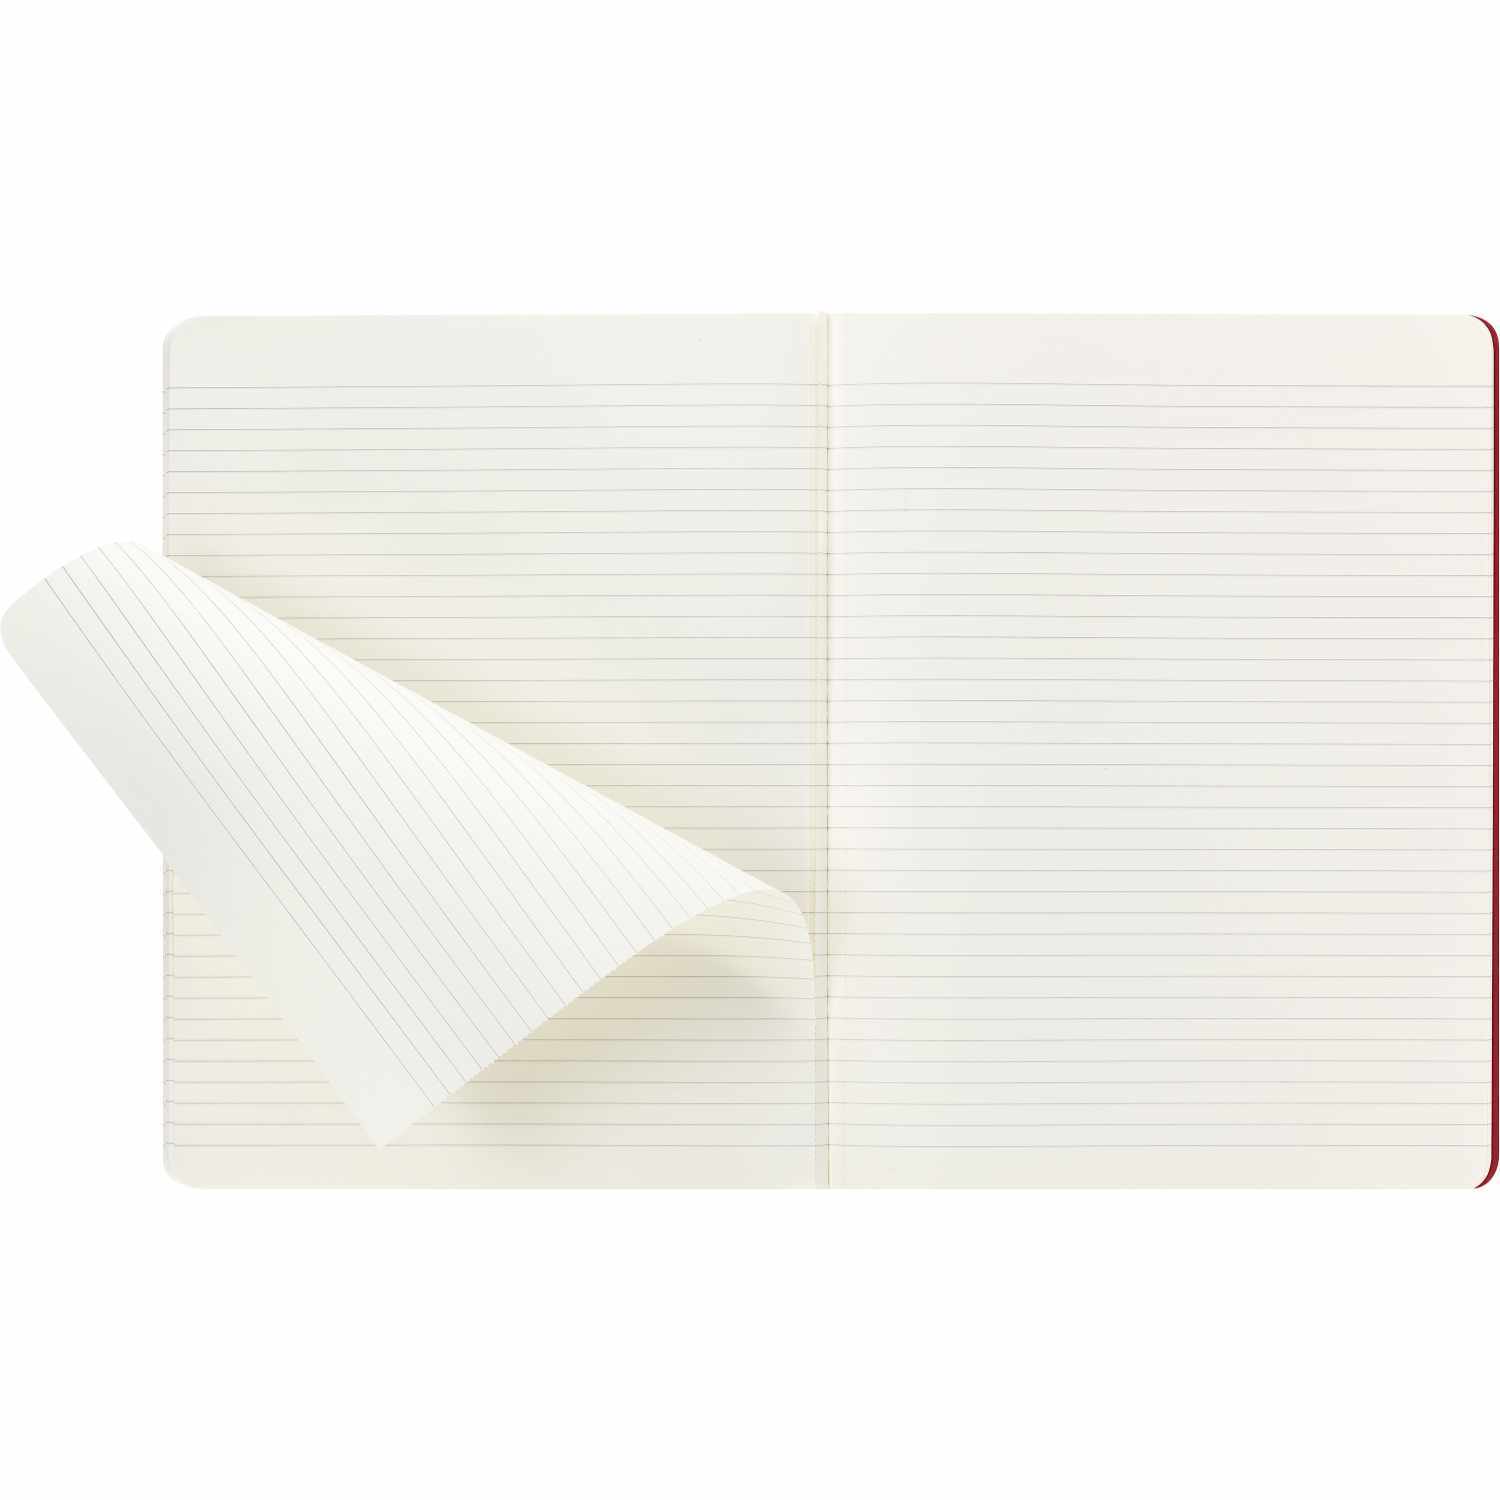 Notizbücher Cahier XL liniert Kartoneinband 3 Stück